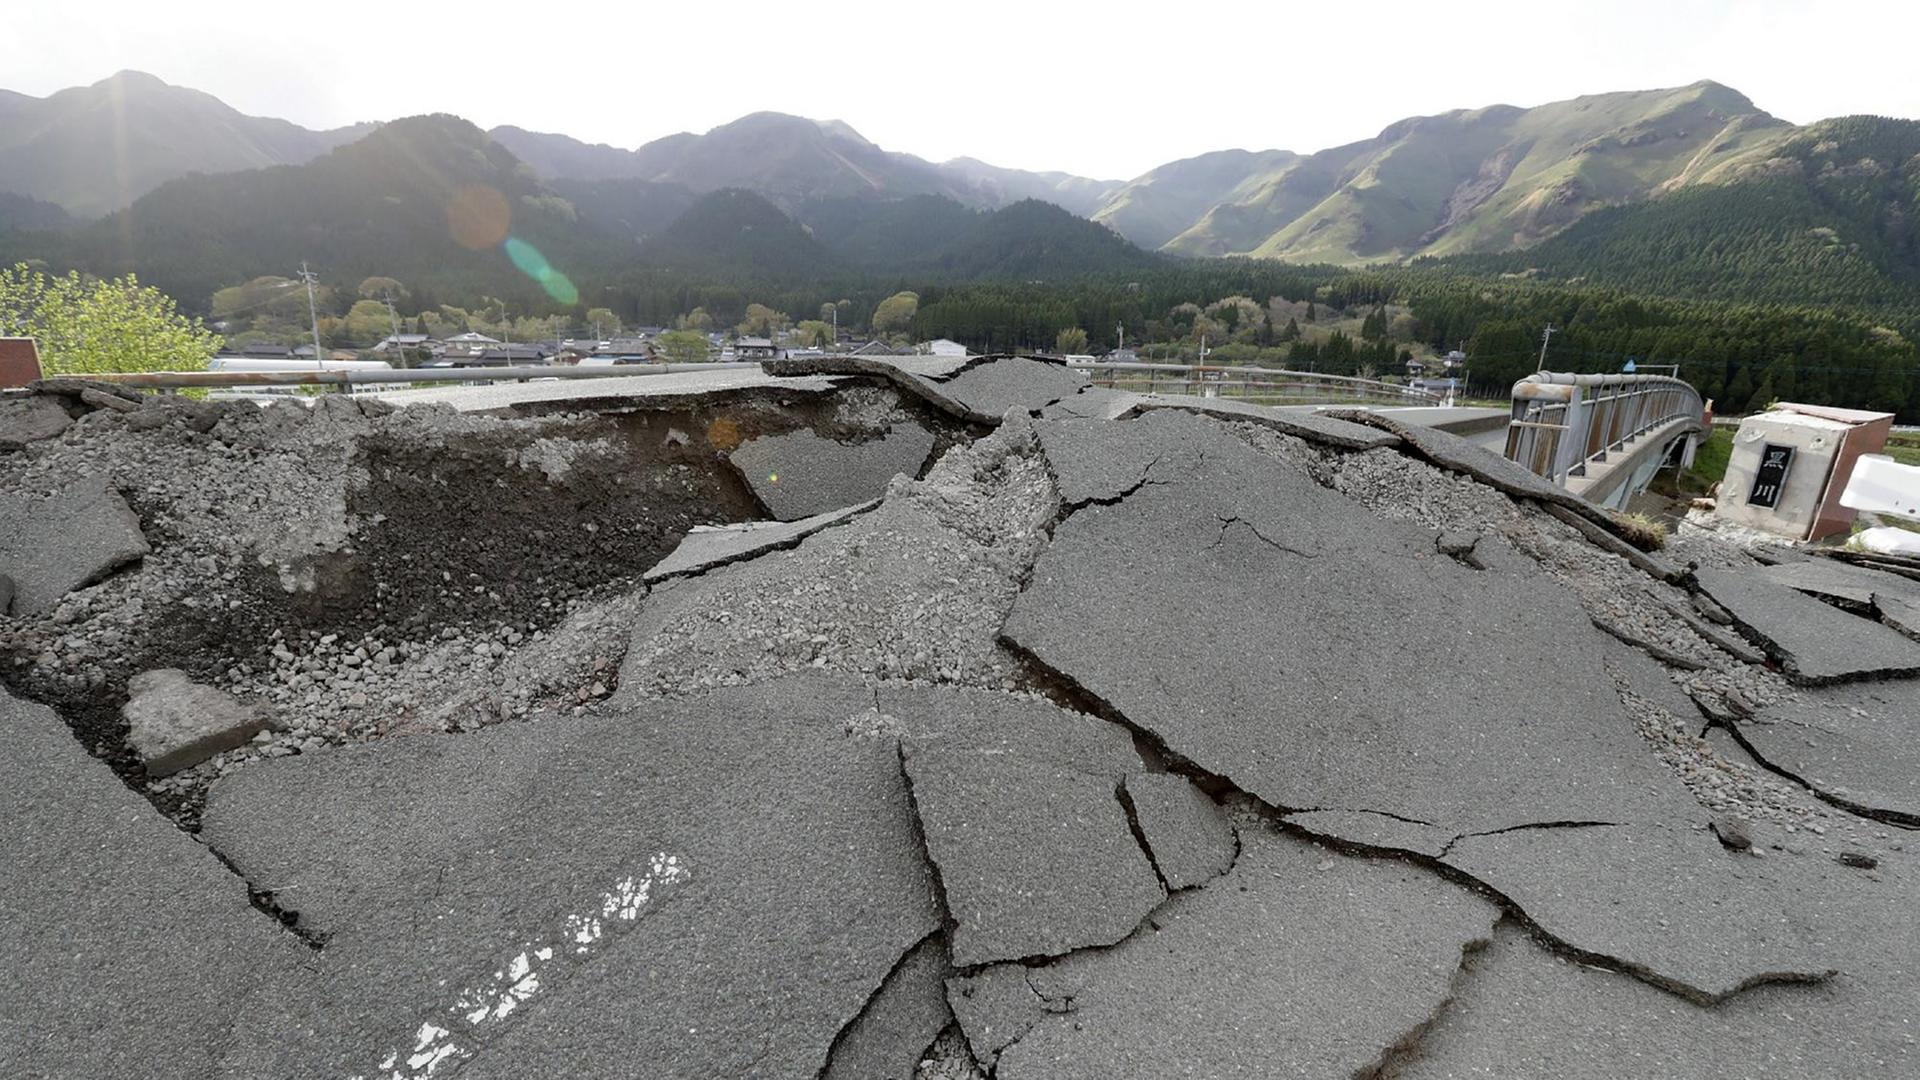 Eine vom Erdbeben zerstörte Straße in Aso, Kumamoto. Bei dem Erdstoß im April 2016 kamen mindestens 41 Menschen ums Leben.